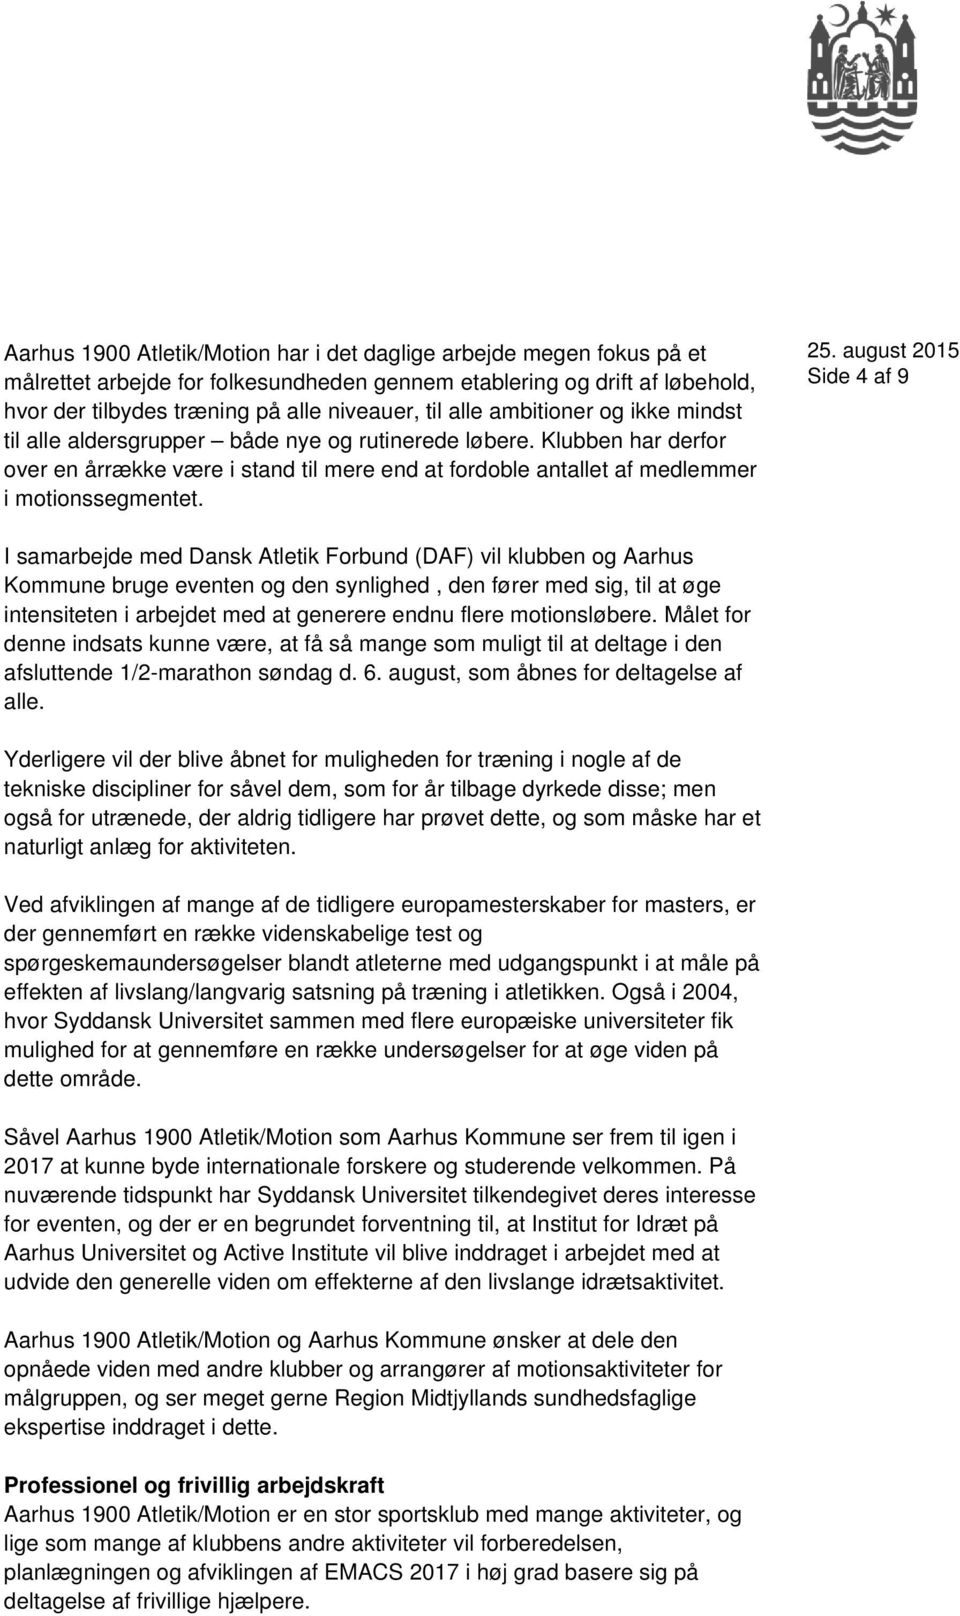 Side 4 af 9 I samarbejde med Dansk Atletik Forbund (DAF) vil klubben og Aarhus Kommune bruge eventen og den synlighed, den fører med sig, til at øge intensiteten i arbejdet med at generere endnu